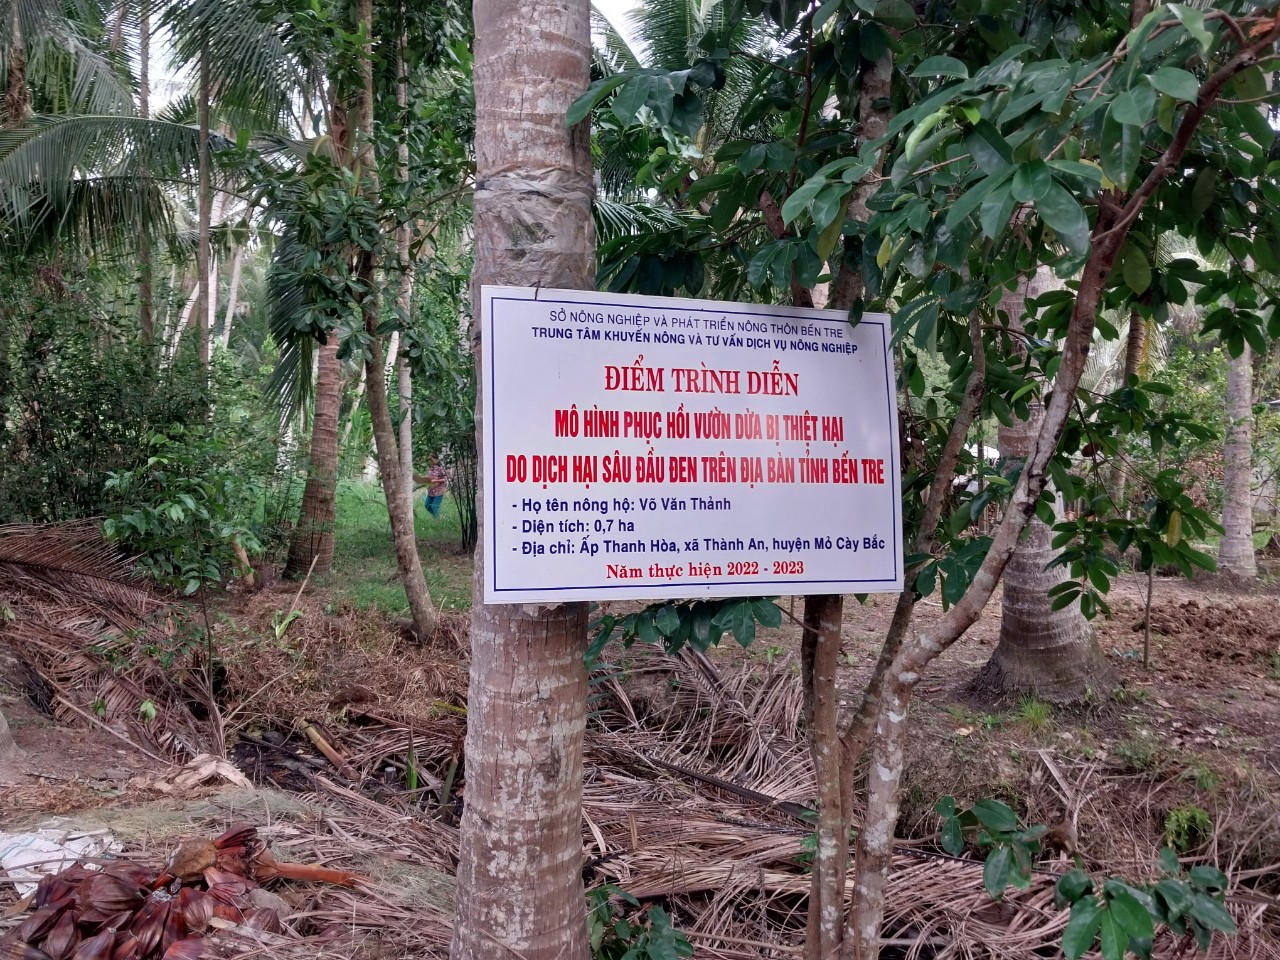 Hiệu quả bước đầu từ việc xây dựng mô hình phục hồi vườn dừa bị thiệt hại do dịch hại sâu đầu đen